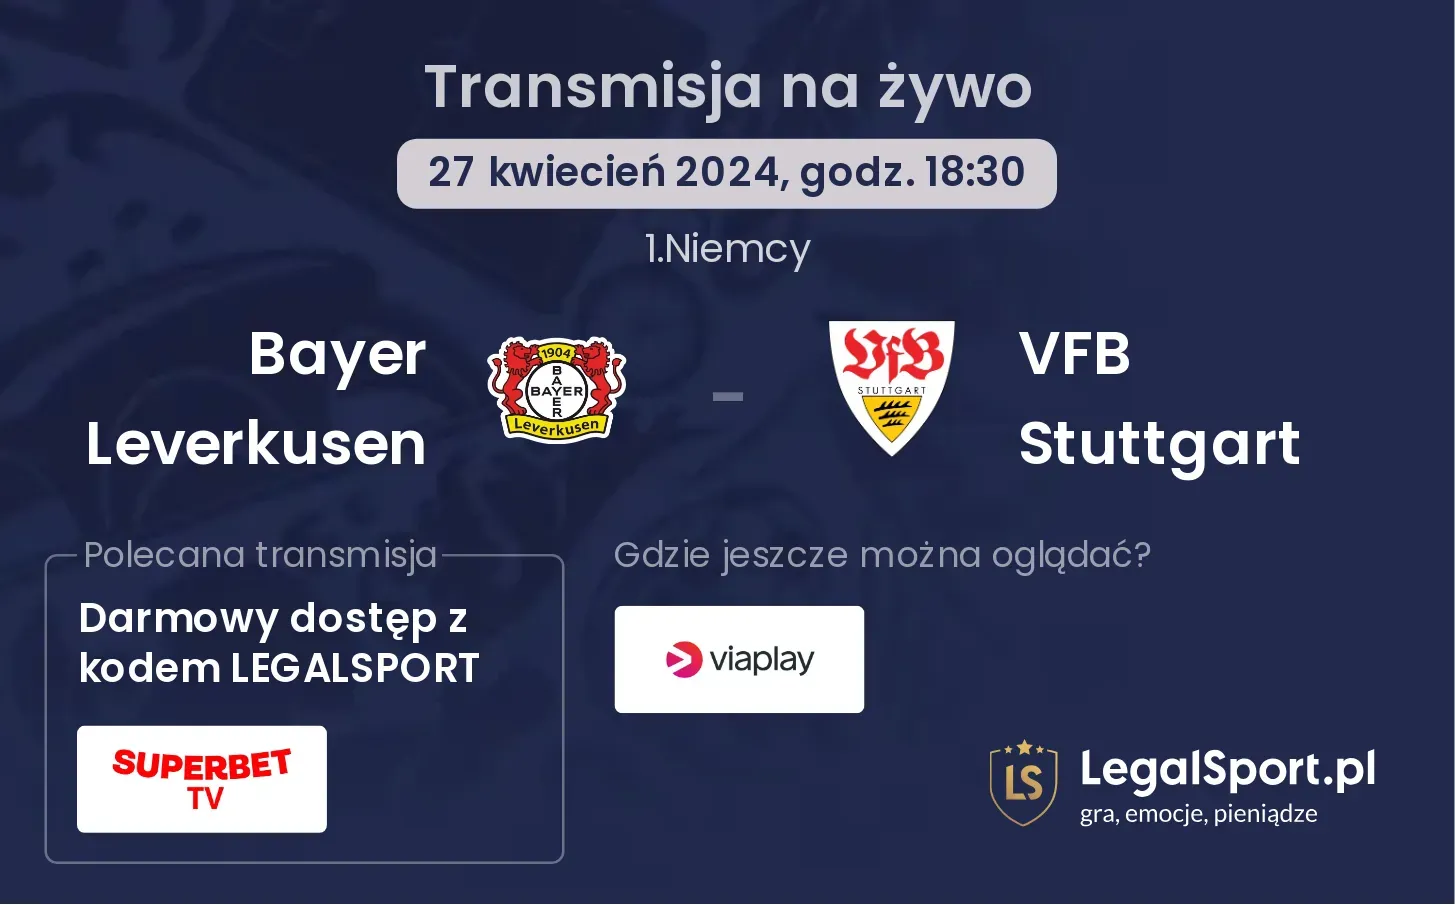 Bayer Leverkusen - VFB Stuttgart transmisja na żywo